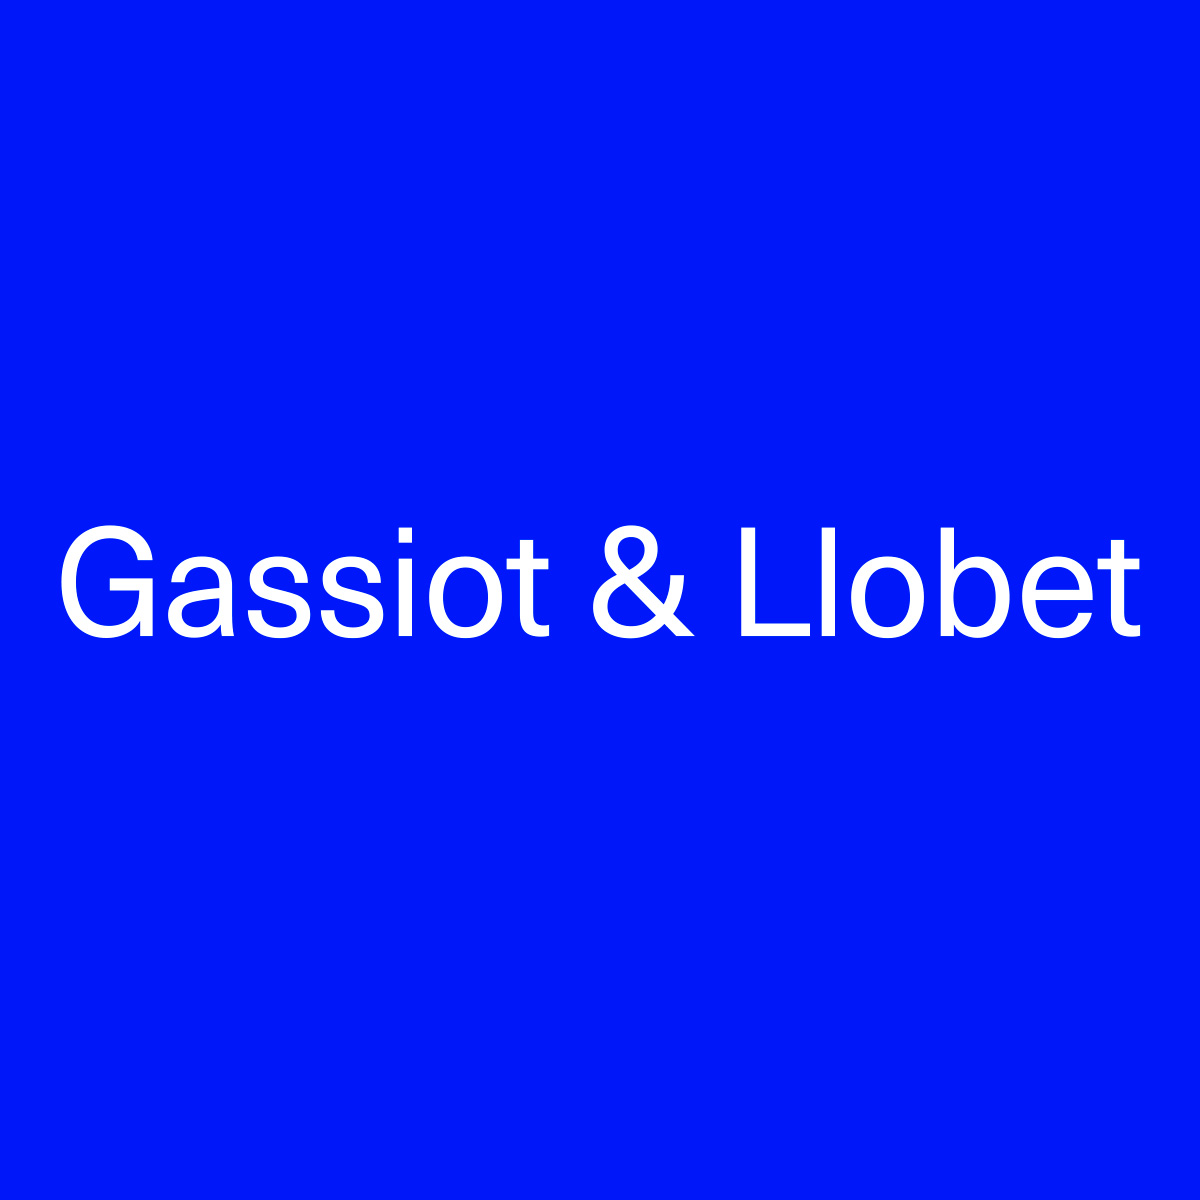 (c) Gassiotllobet.com